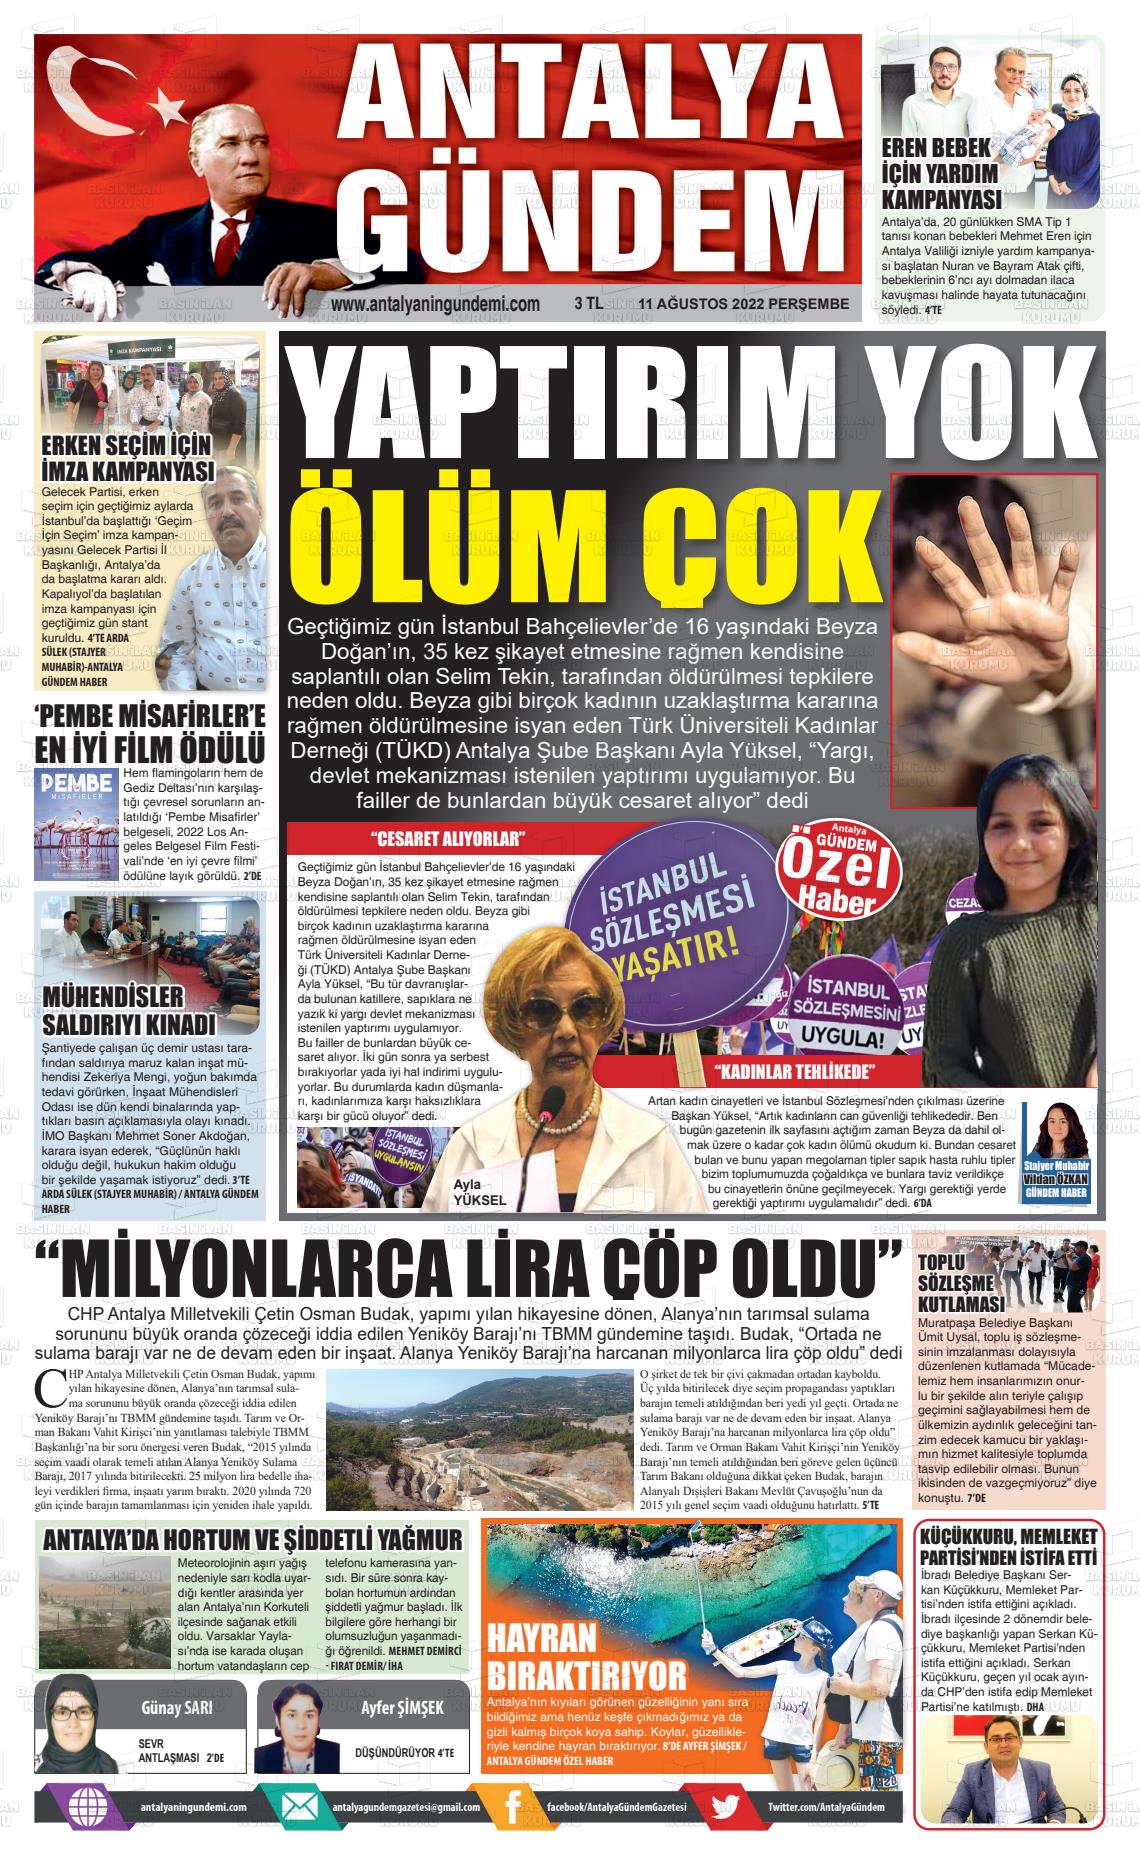 11 Ağustos 2022 Antalya'nın Gündemi Gazete Manşeti